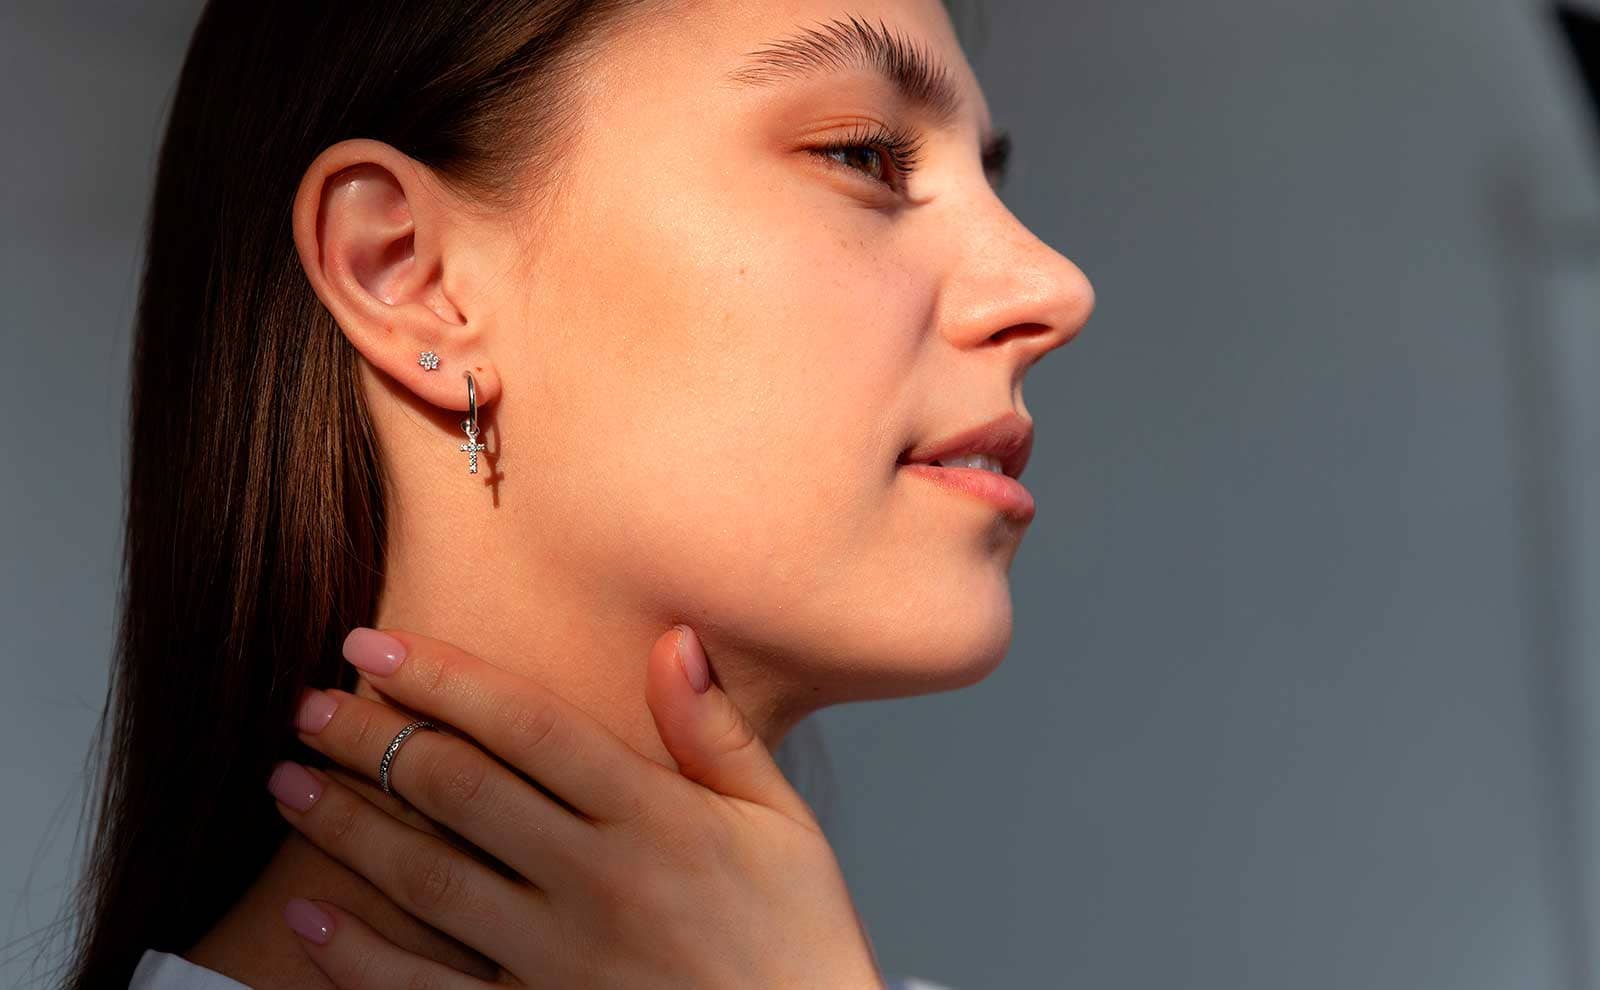 Jewelry Earrings Jewelry Ear Piece U Temperament Pearl Ear Earrings Shaped  Design Hook Small Earrings Accessories for Women 